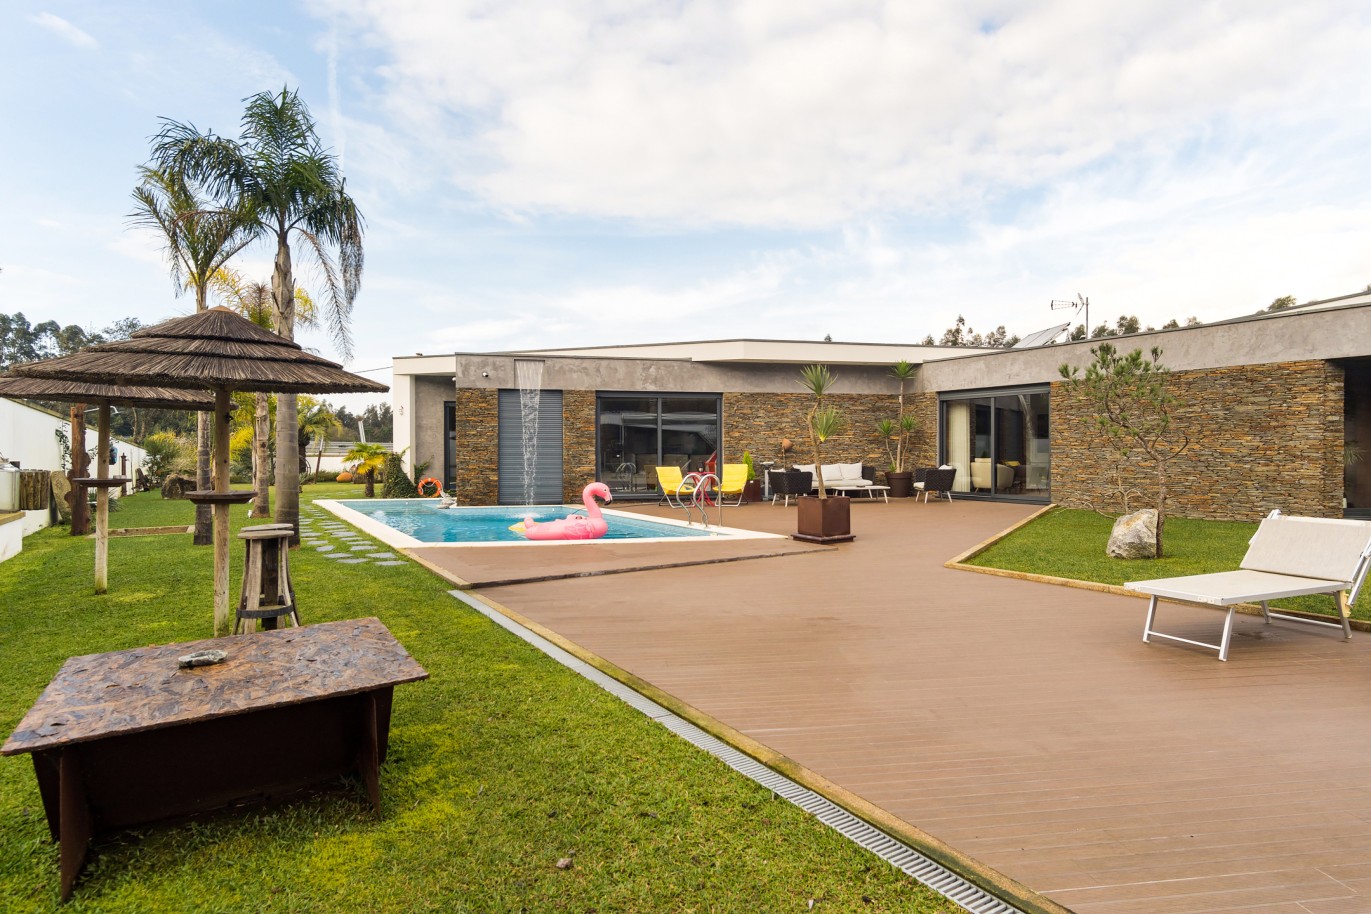 Vente : Villa individuelle de plain-pied avec piscine, terrain de jeux et jardin, à Ovar, Nord du Portugal_214922